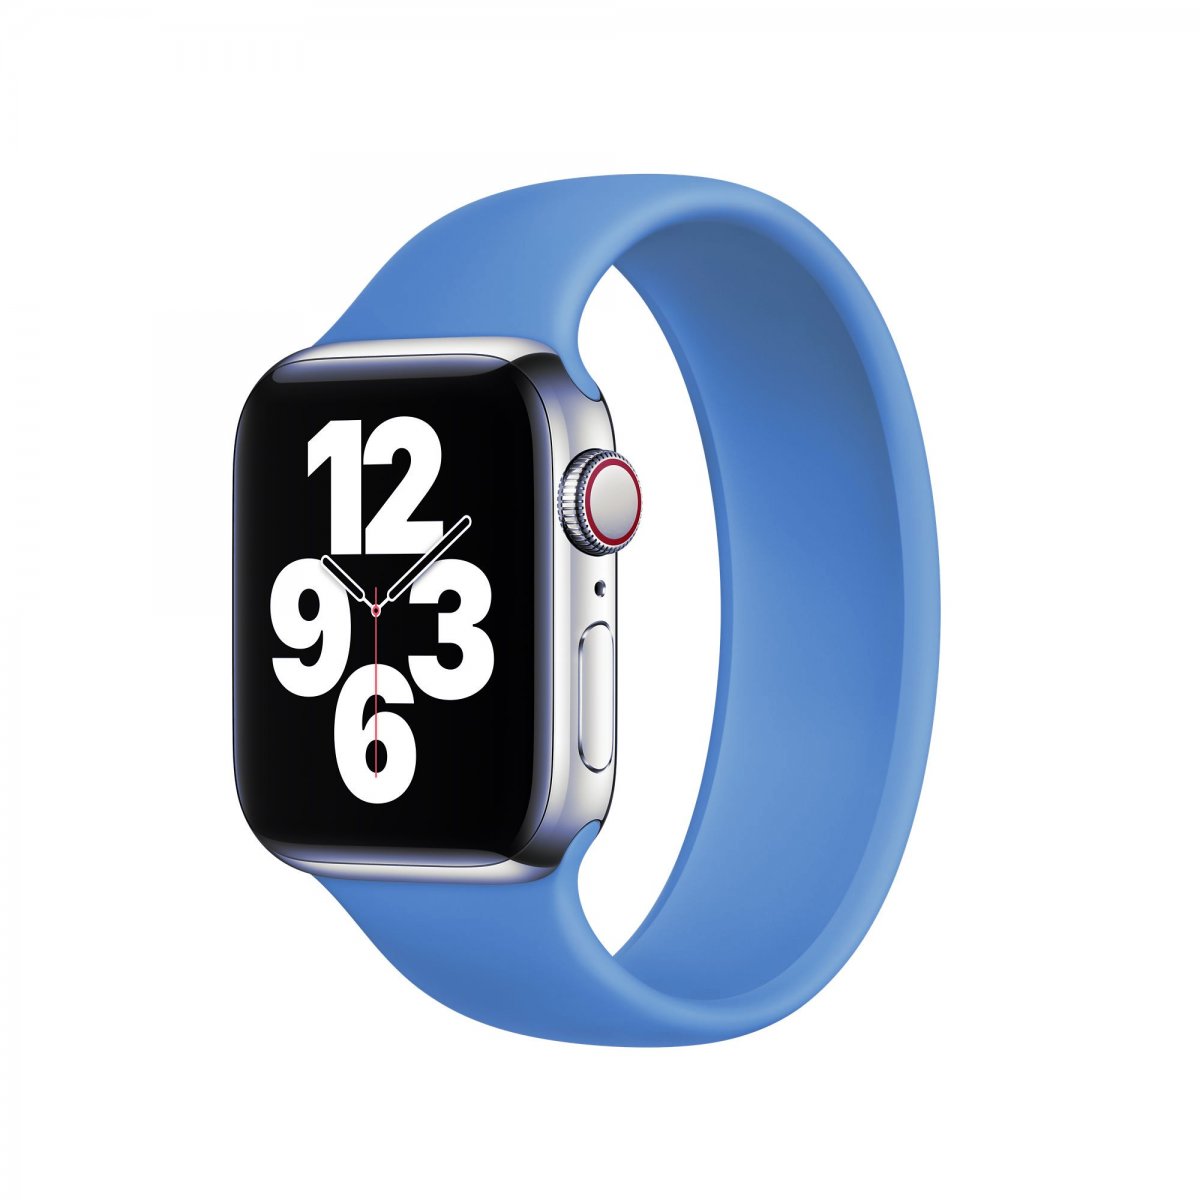 Řemínek iMore Solo Loop Apple Watch Series 1/2/3 38mm - Modrá (M)